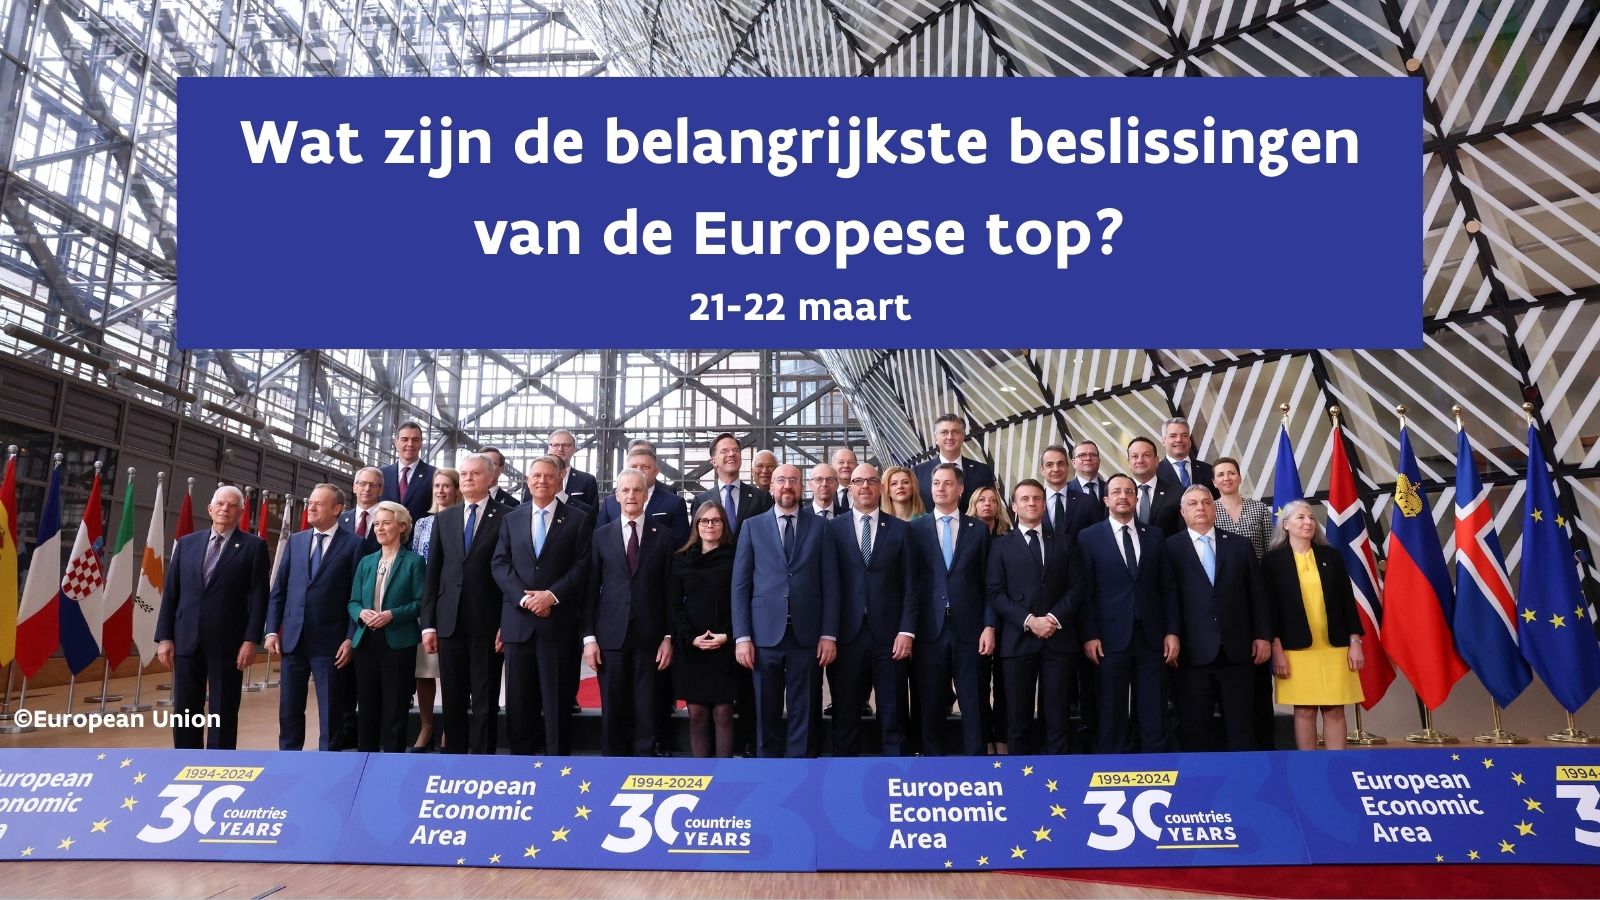 Belangrijkste beslissingen van de Europese Top